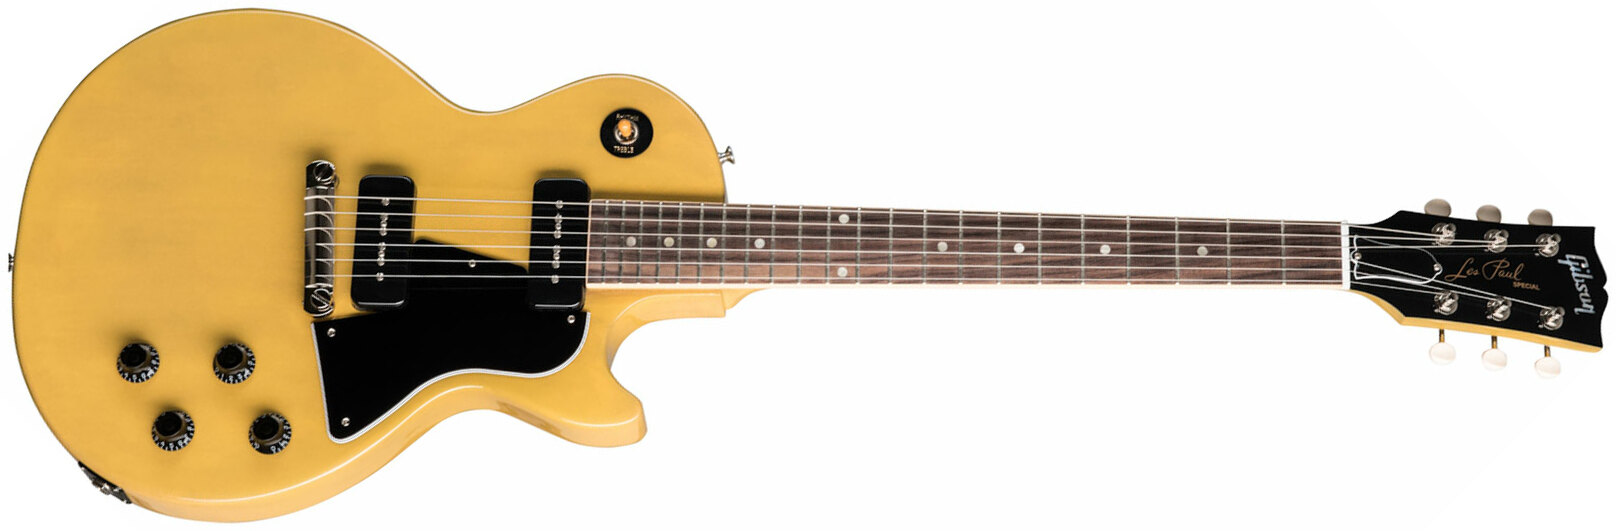 Gibson Les Paul Special Original 2p90 Ht Rw - Tv Yellow - Guitare Électrique Single Cut - Main picture